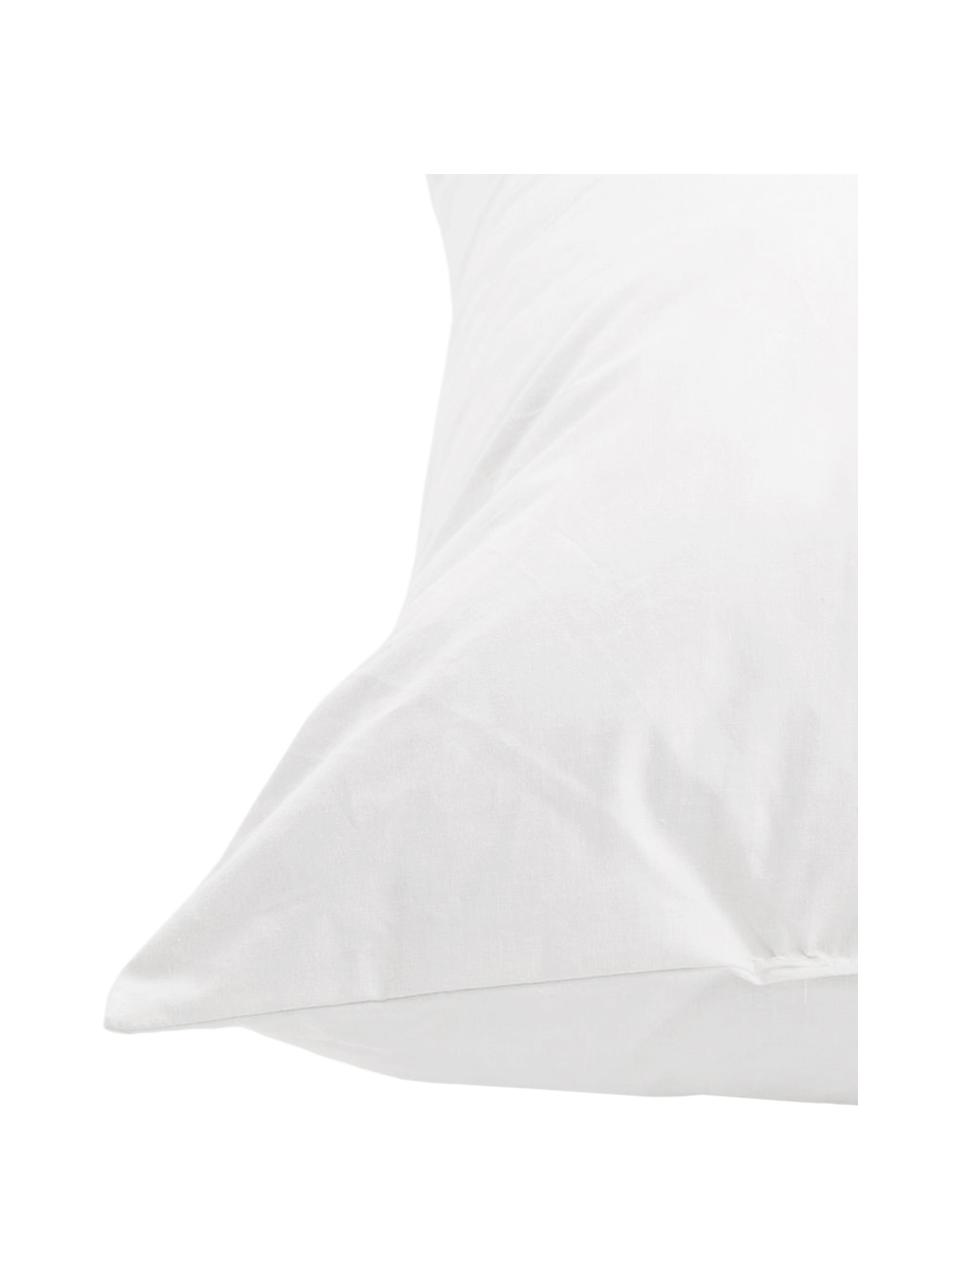 Wkład do poduszki dekoracyjnej z pierza Premium, 60x60, Biały, S 60 x D 60 cm